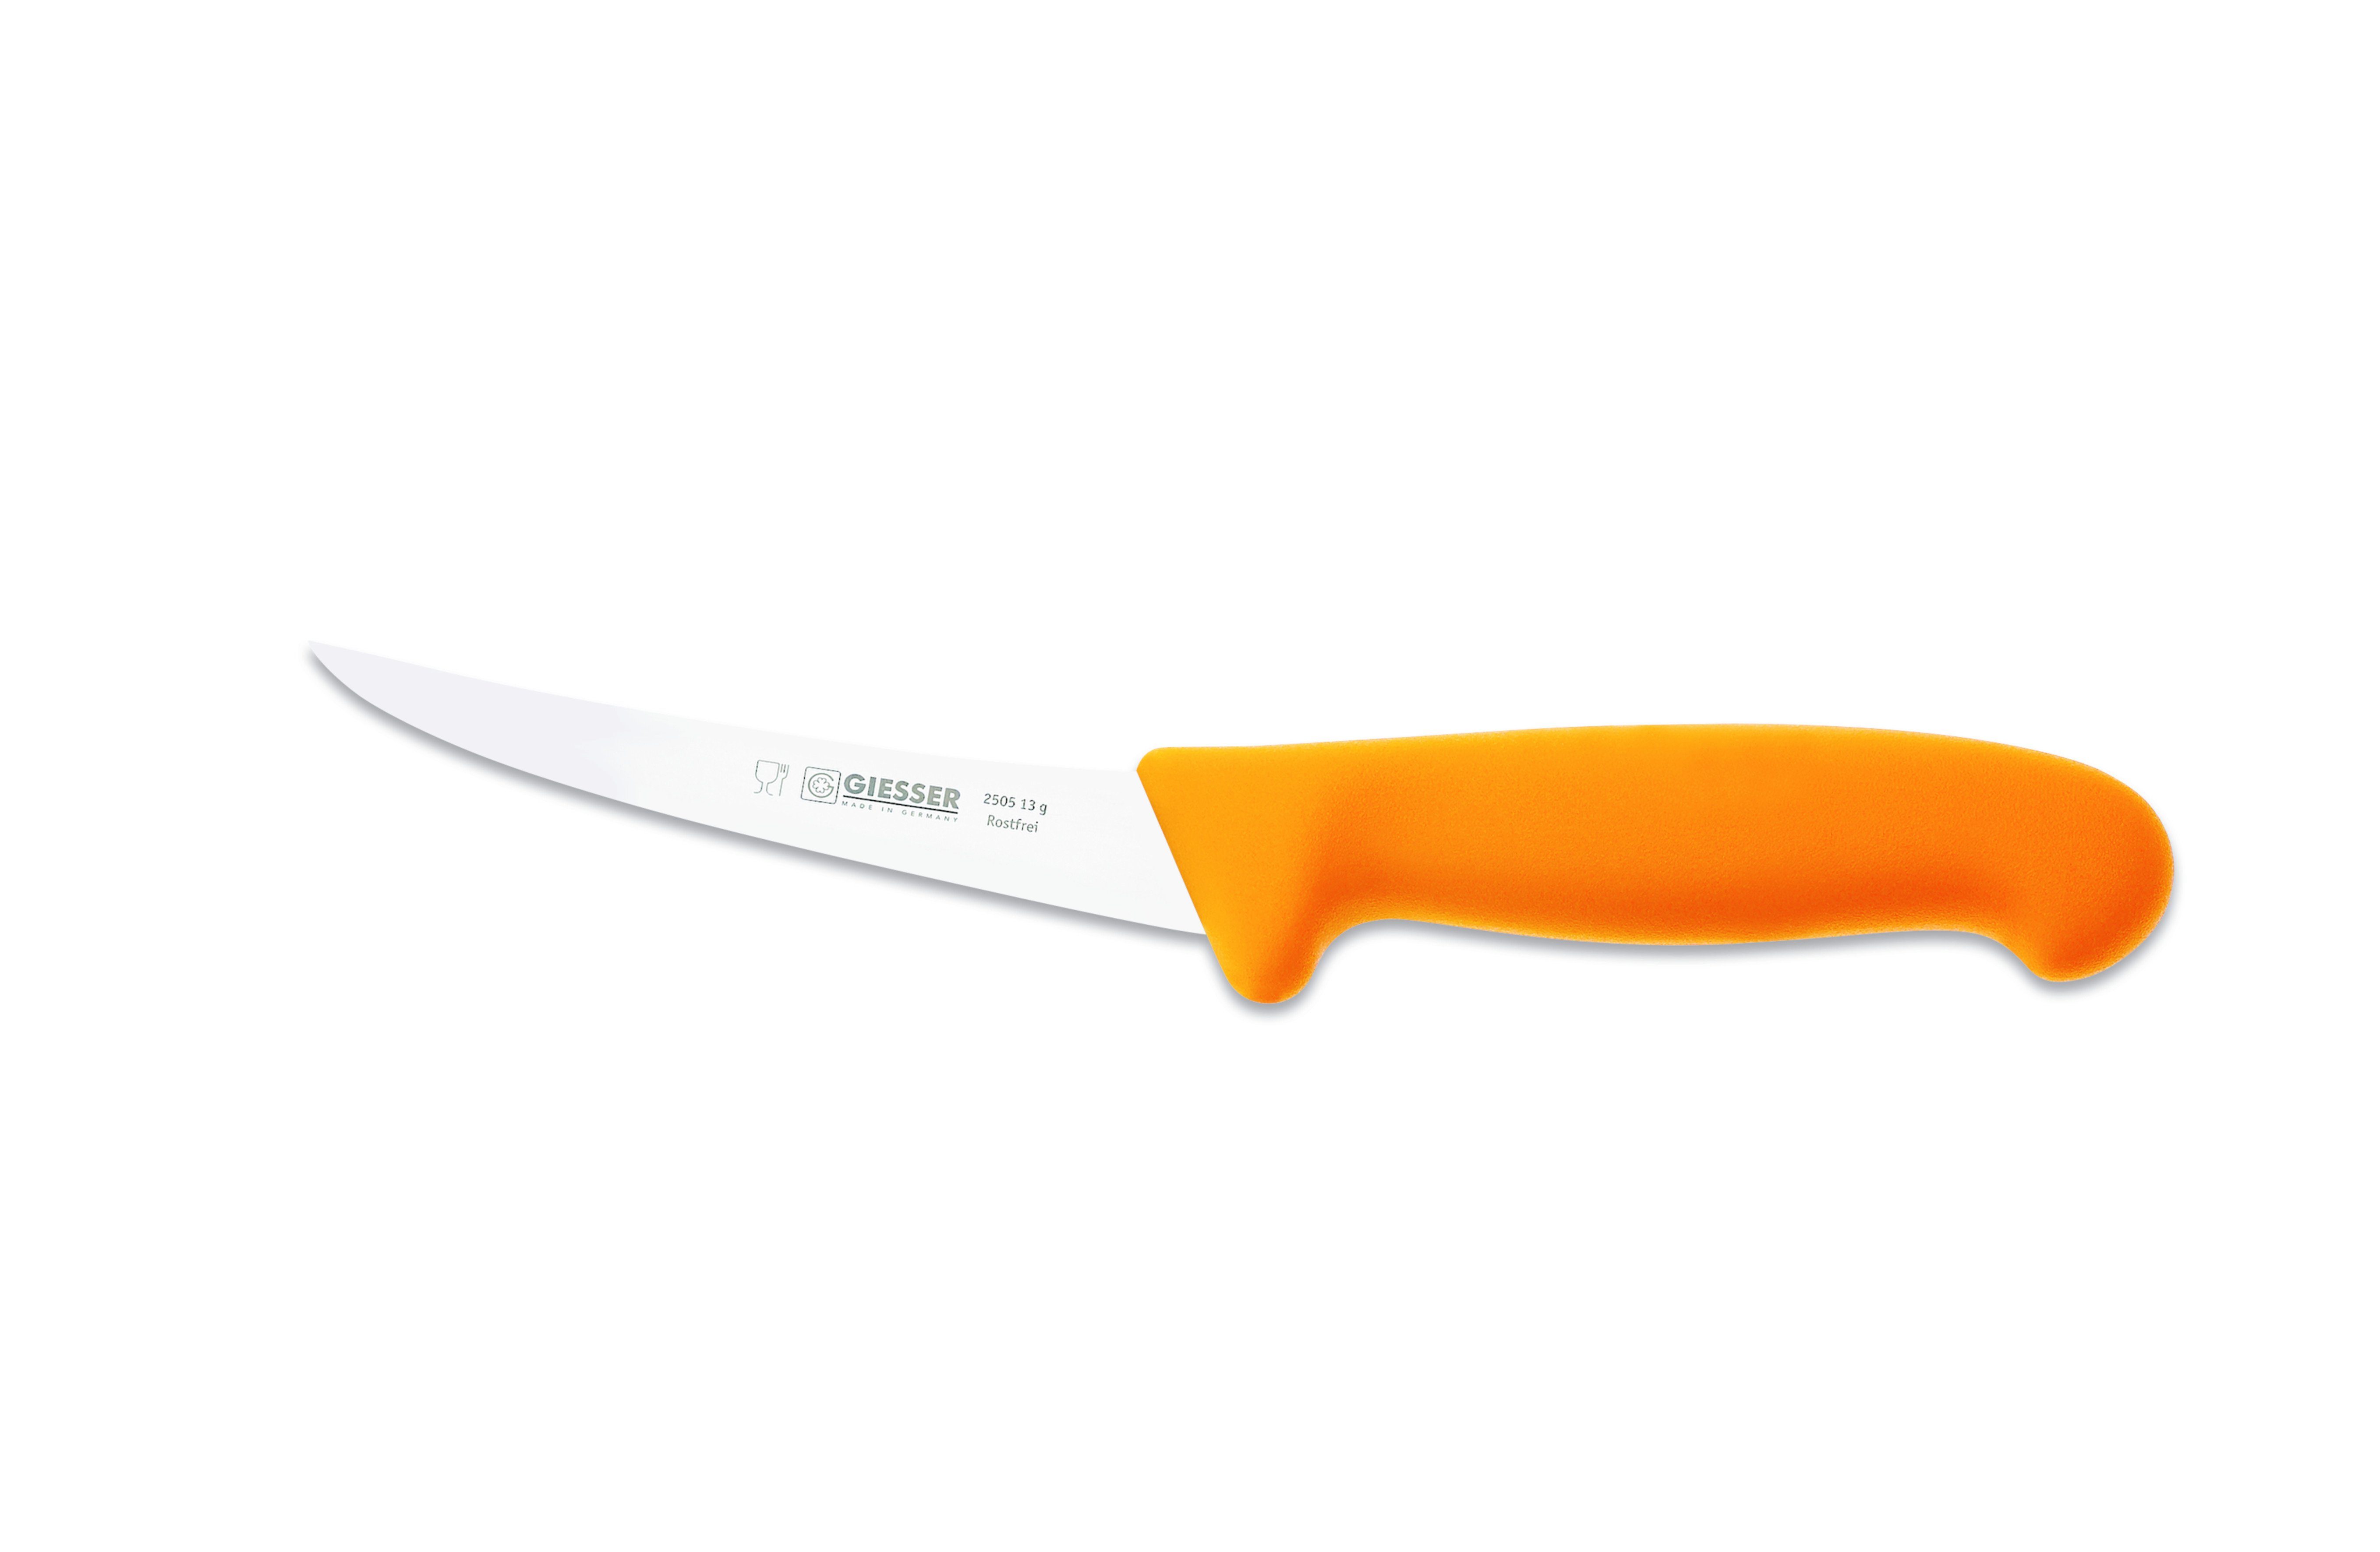 Giesser Messer Ausbeinmesser Fleischermesser 2505 13-17, Klingenstärke: sehr flexibel, flexibel, stark Gelb | Ausbeinmesser